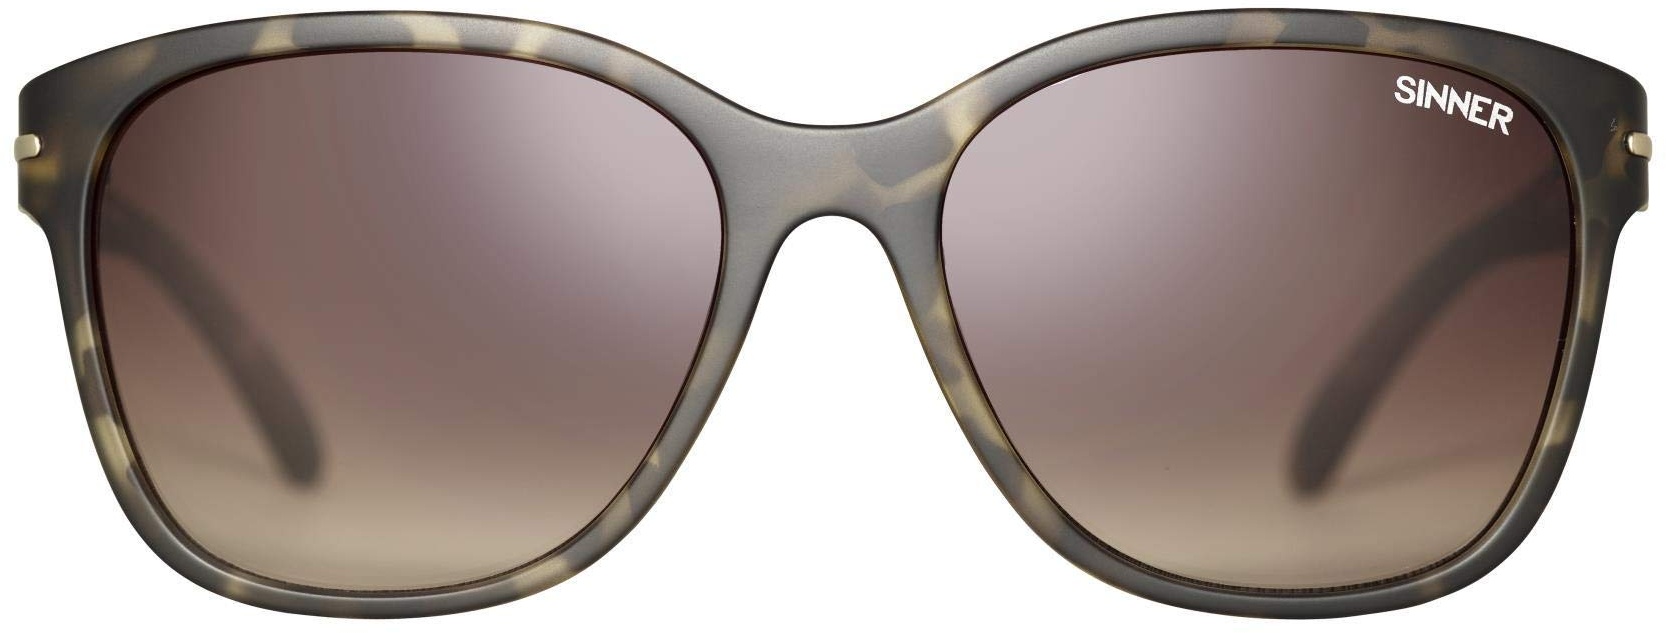 SINNER Paraiso Sonnenbrille Damen Rund - 2 Modische Farben – Modern Design - 100% UV400 Schutz – Olive/Tortoise - Einheitsgröße